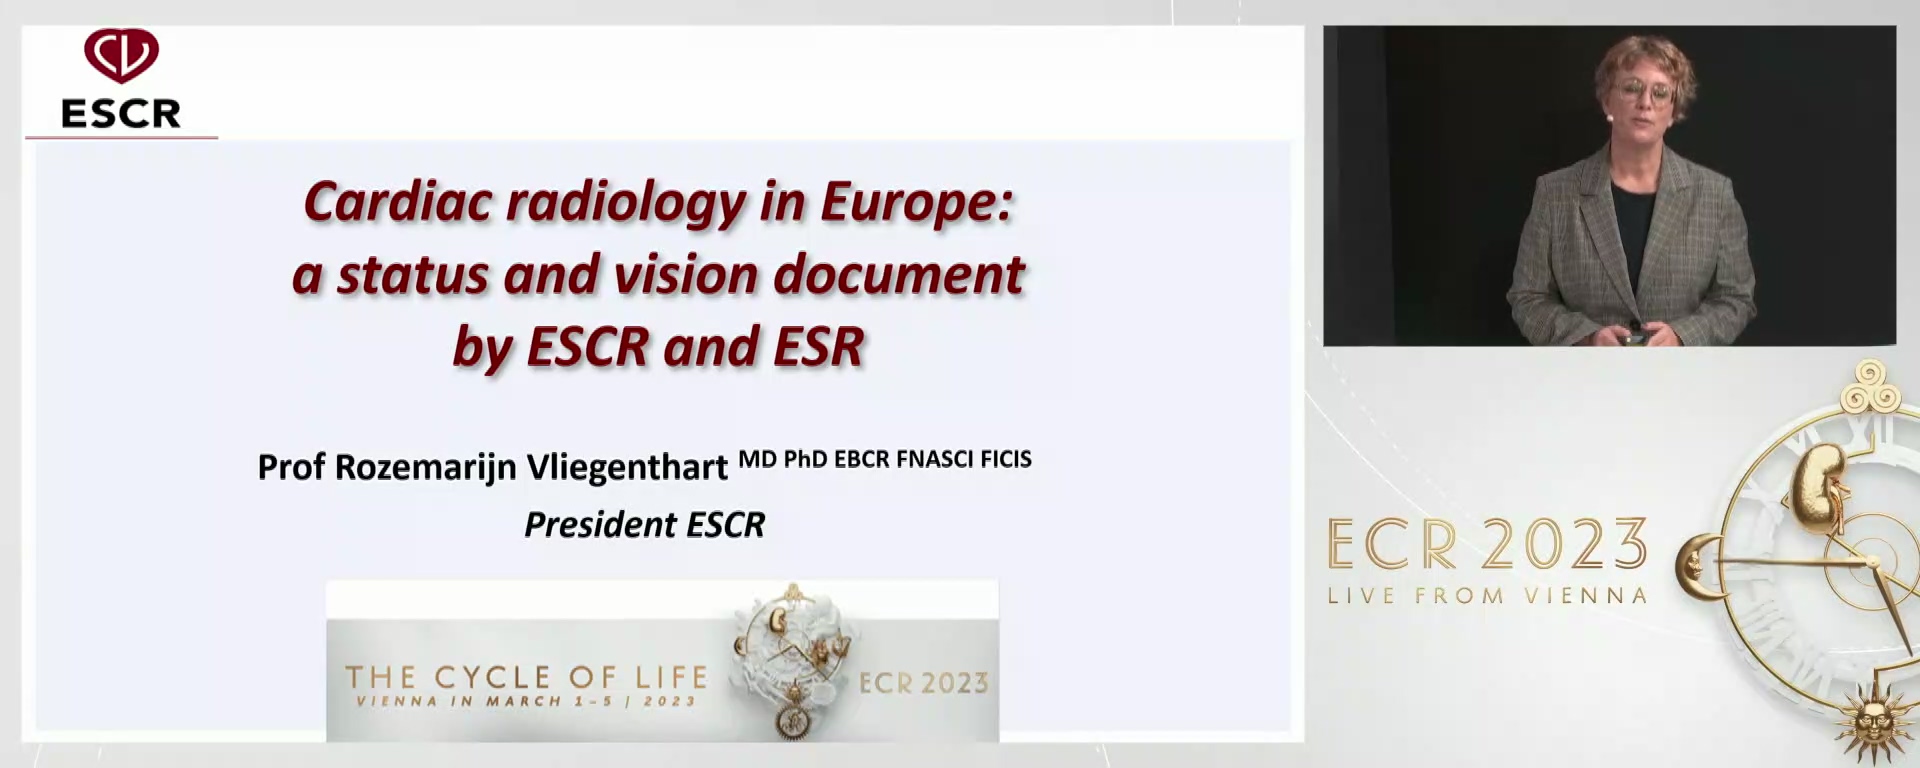 ESCR/ESR vision on cardiac radiology